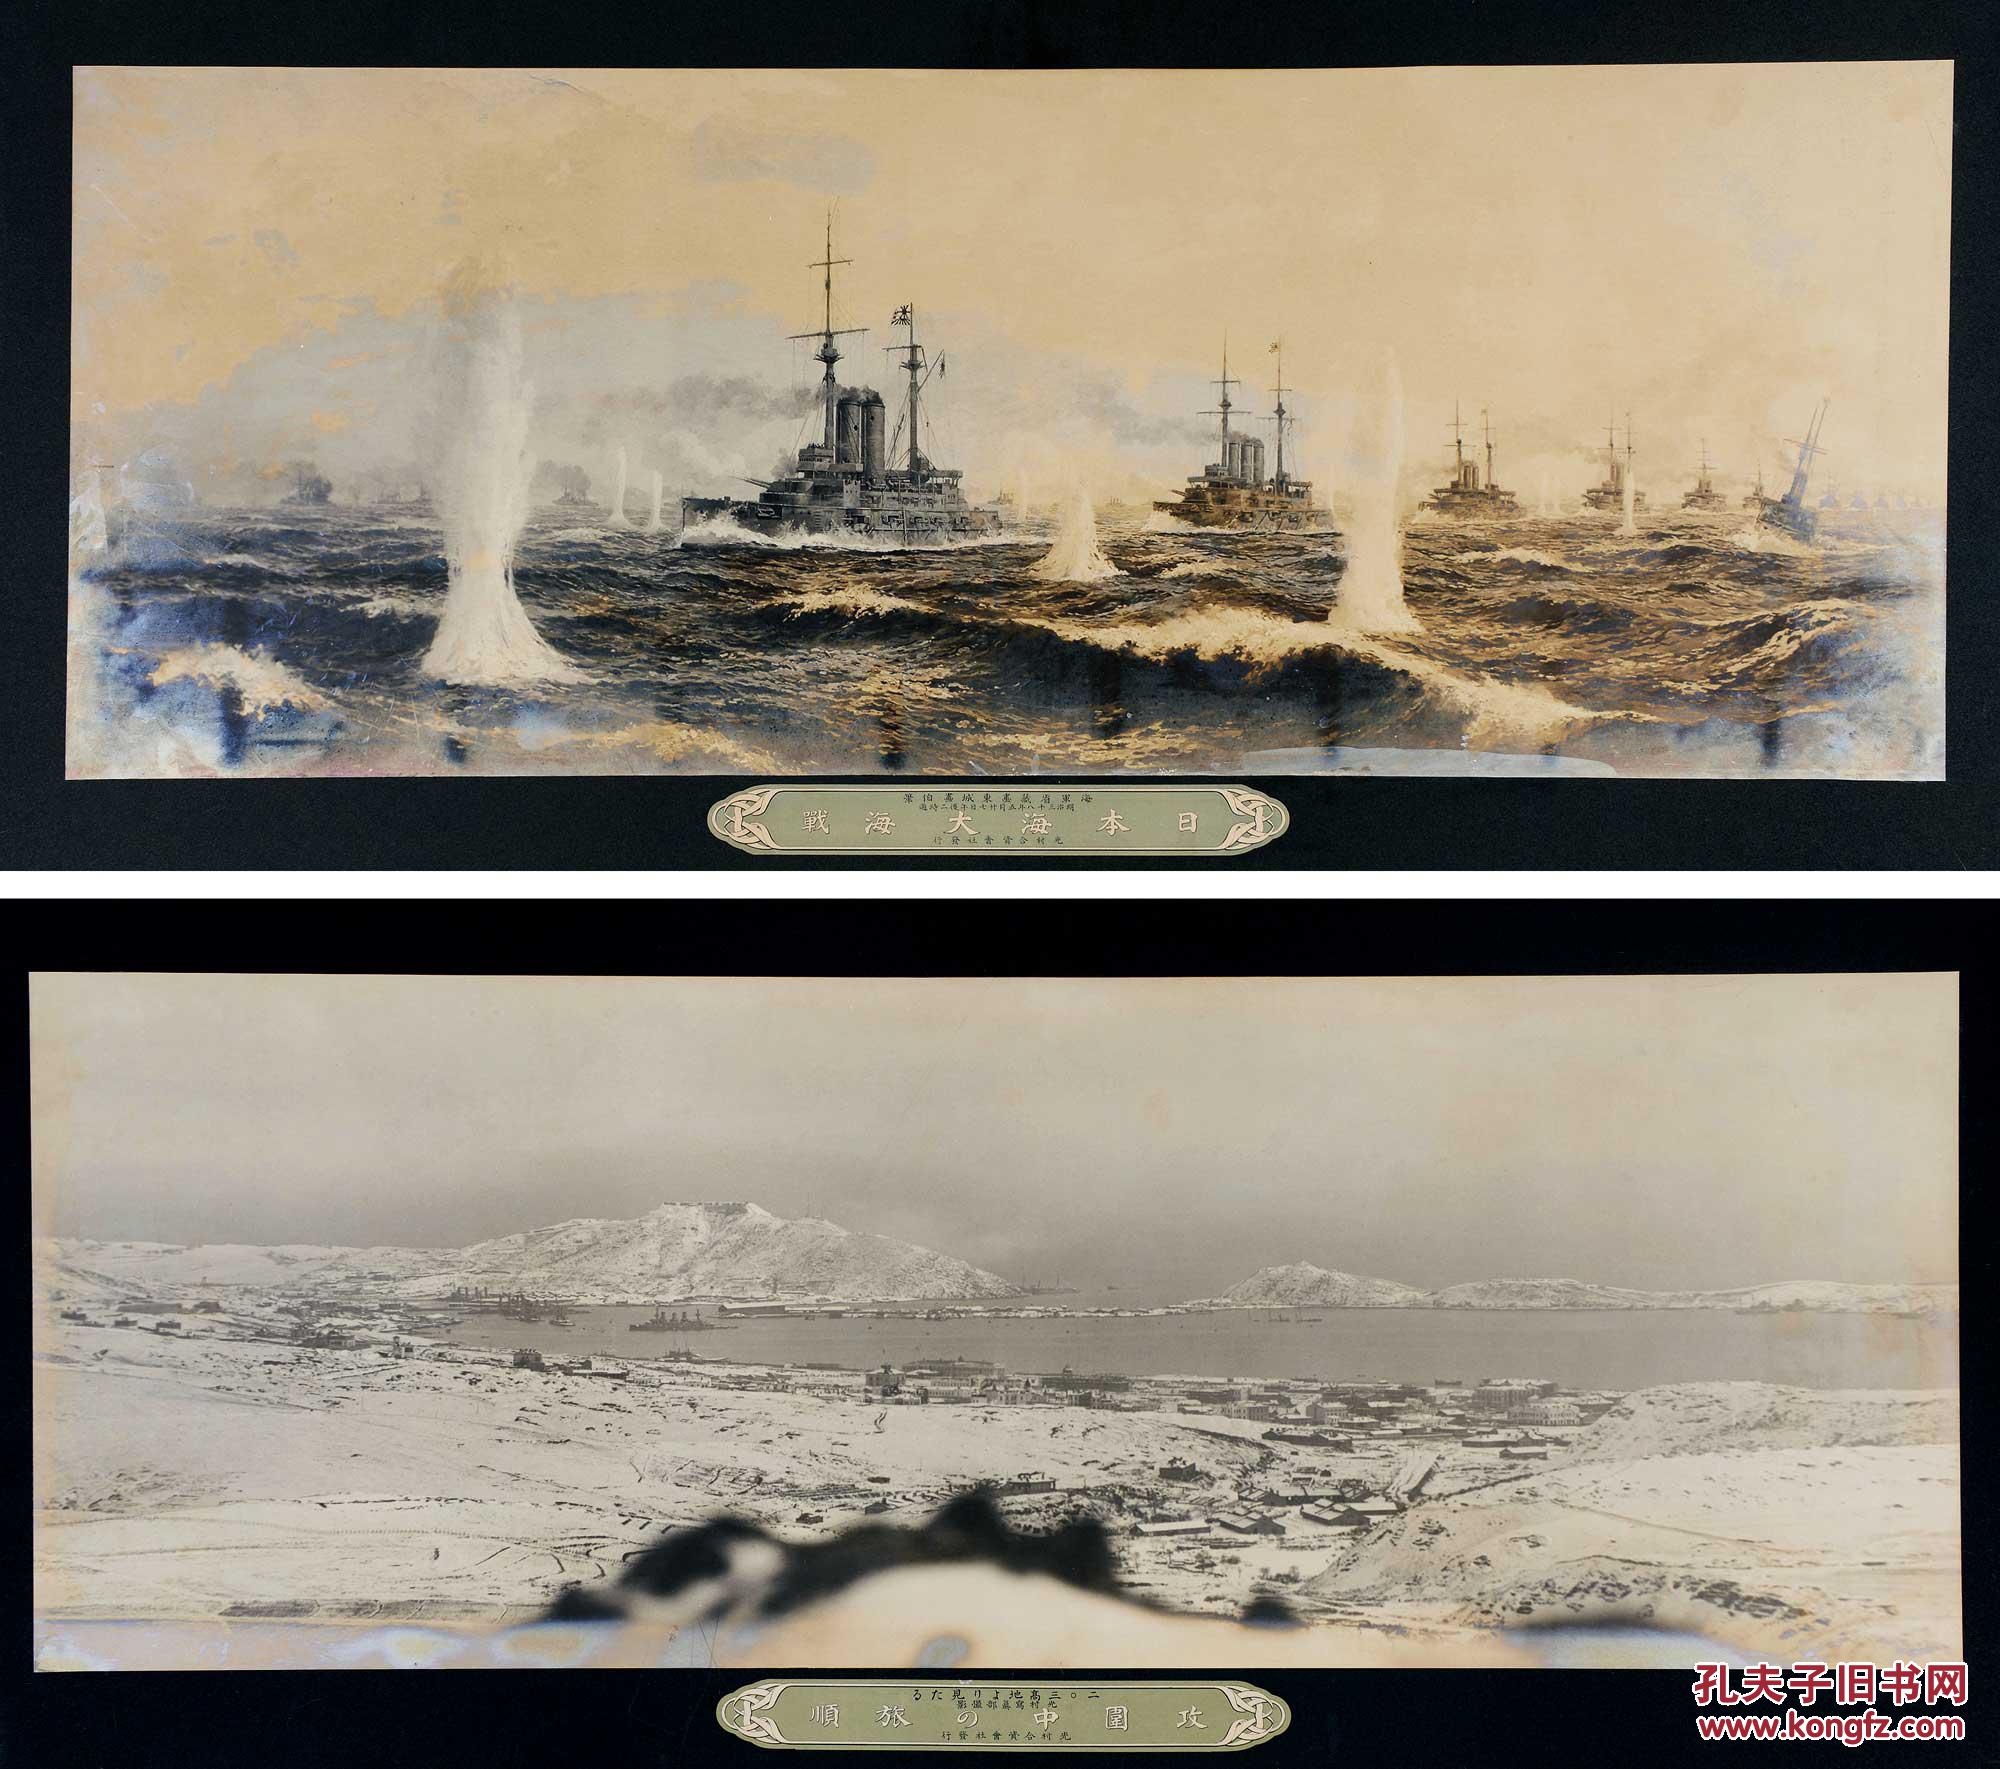 日俄战争旅顺口全景,黄海海战照片